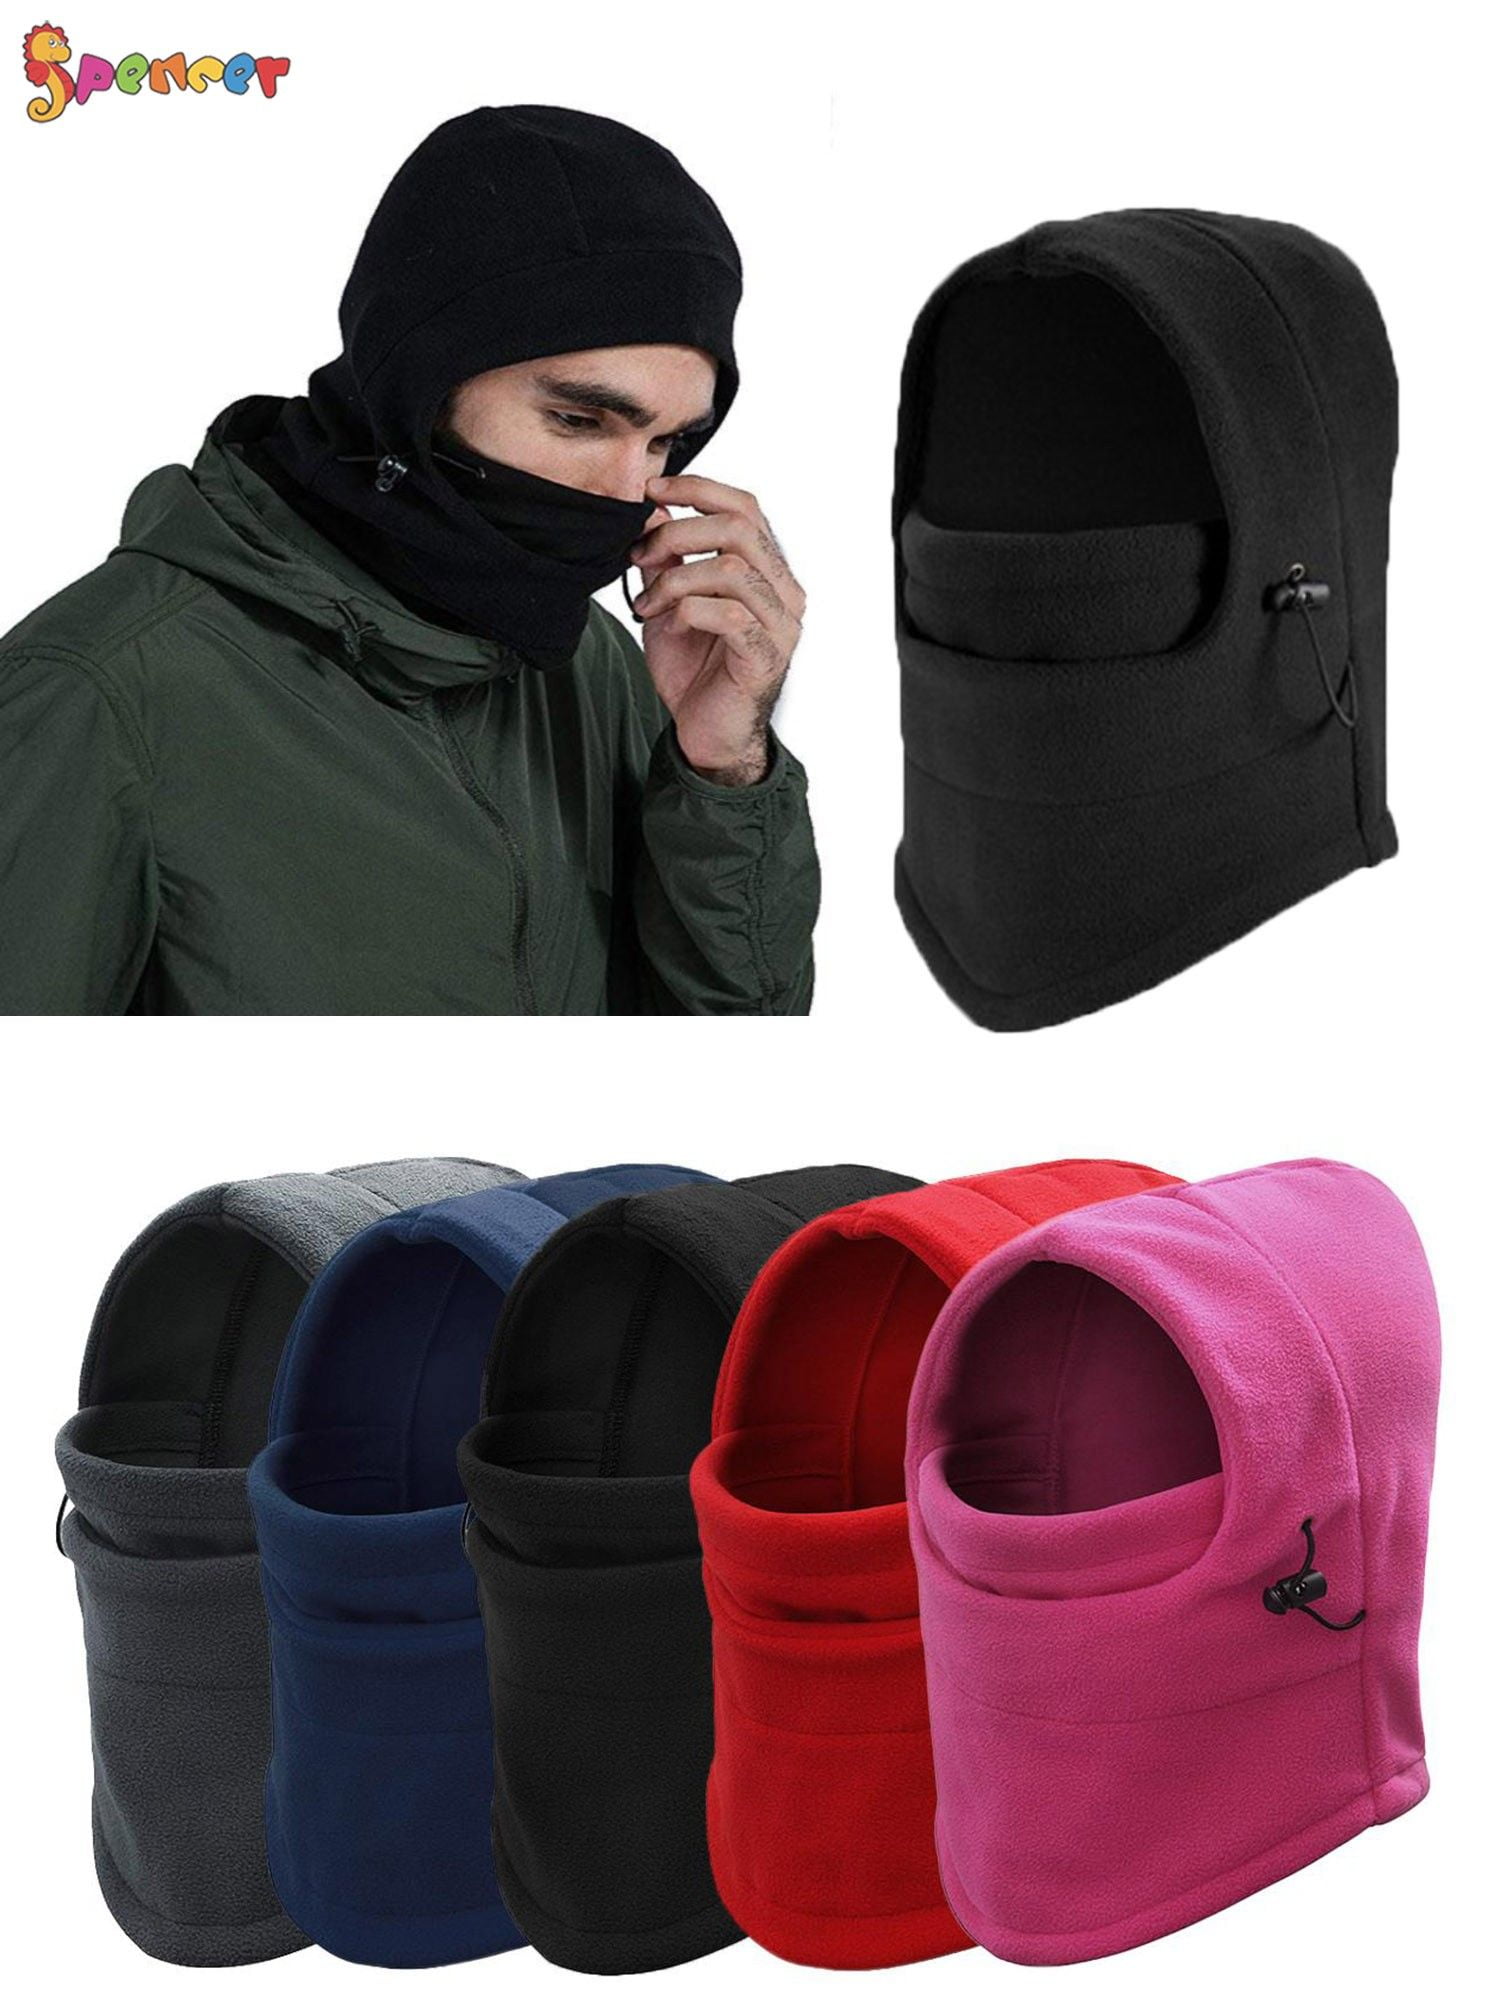 Thermal Fleece Winter Warm Hat Cycling headgear Ski Face Mask Windproof Hood 